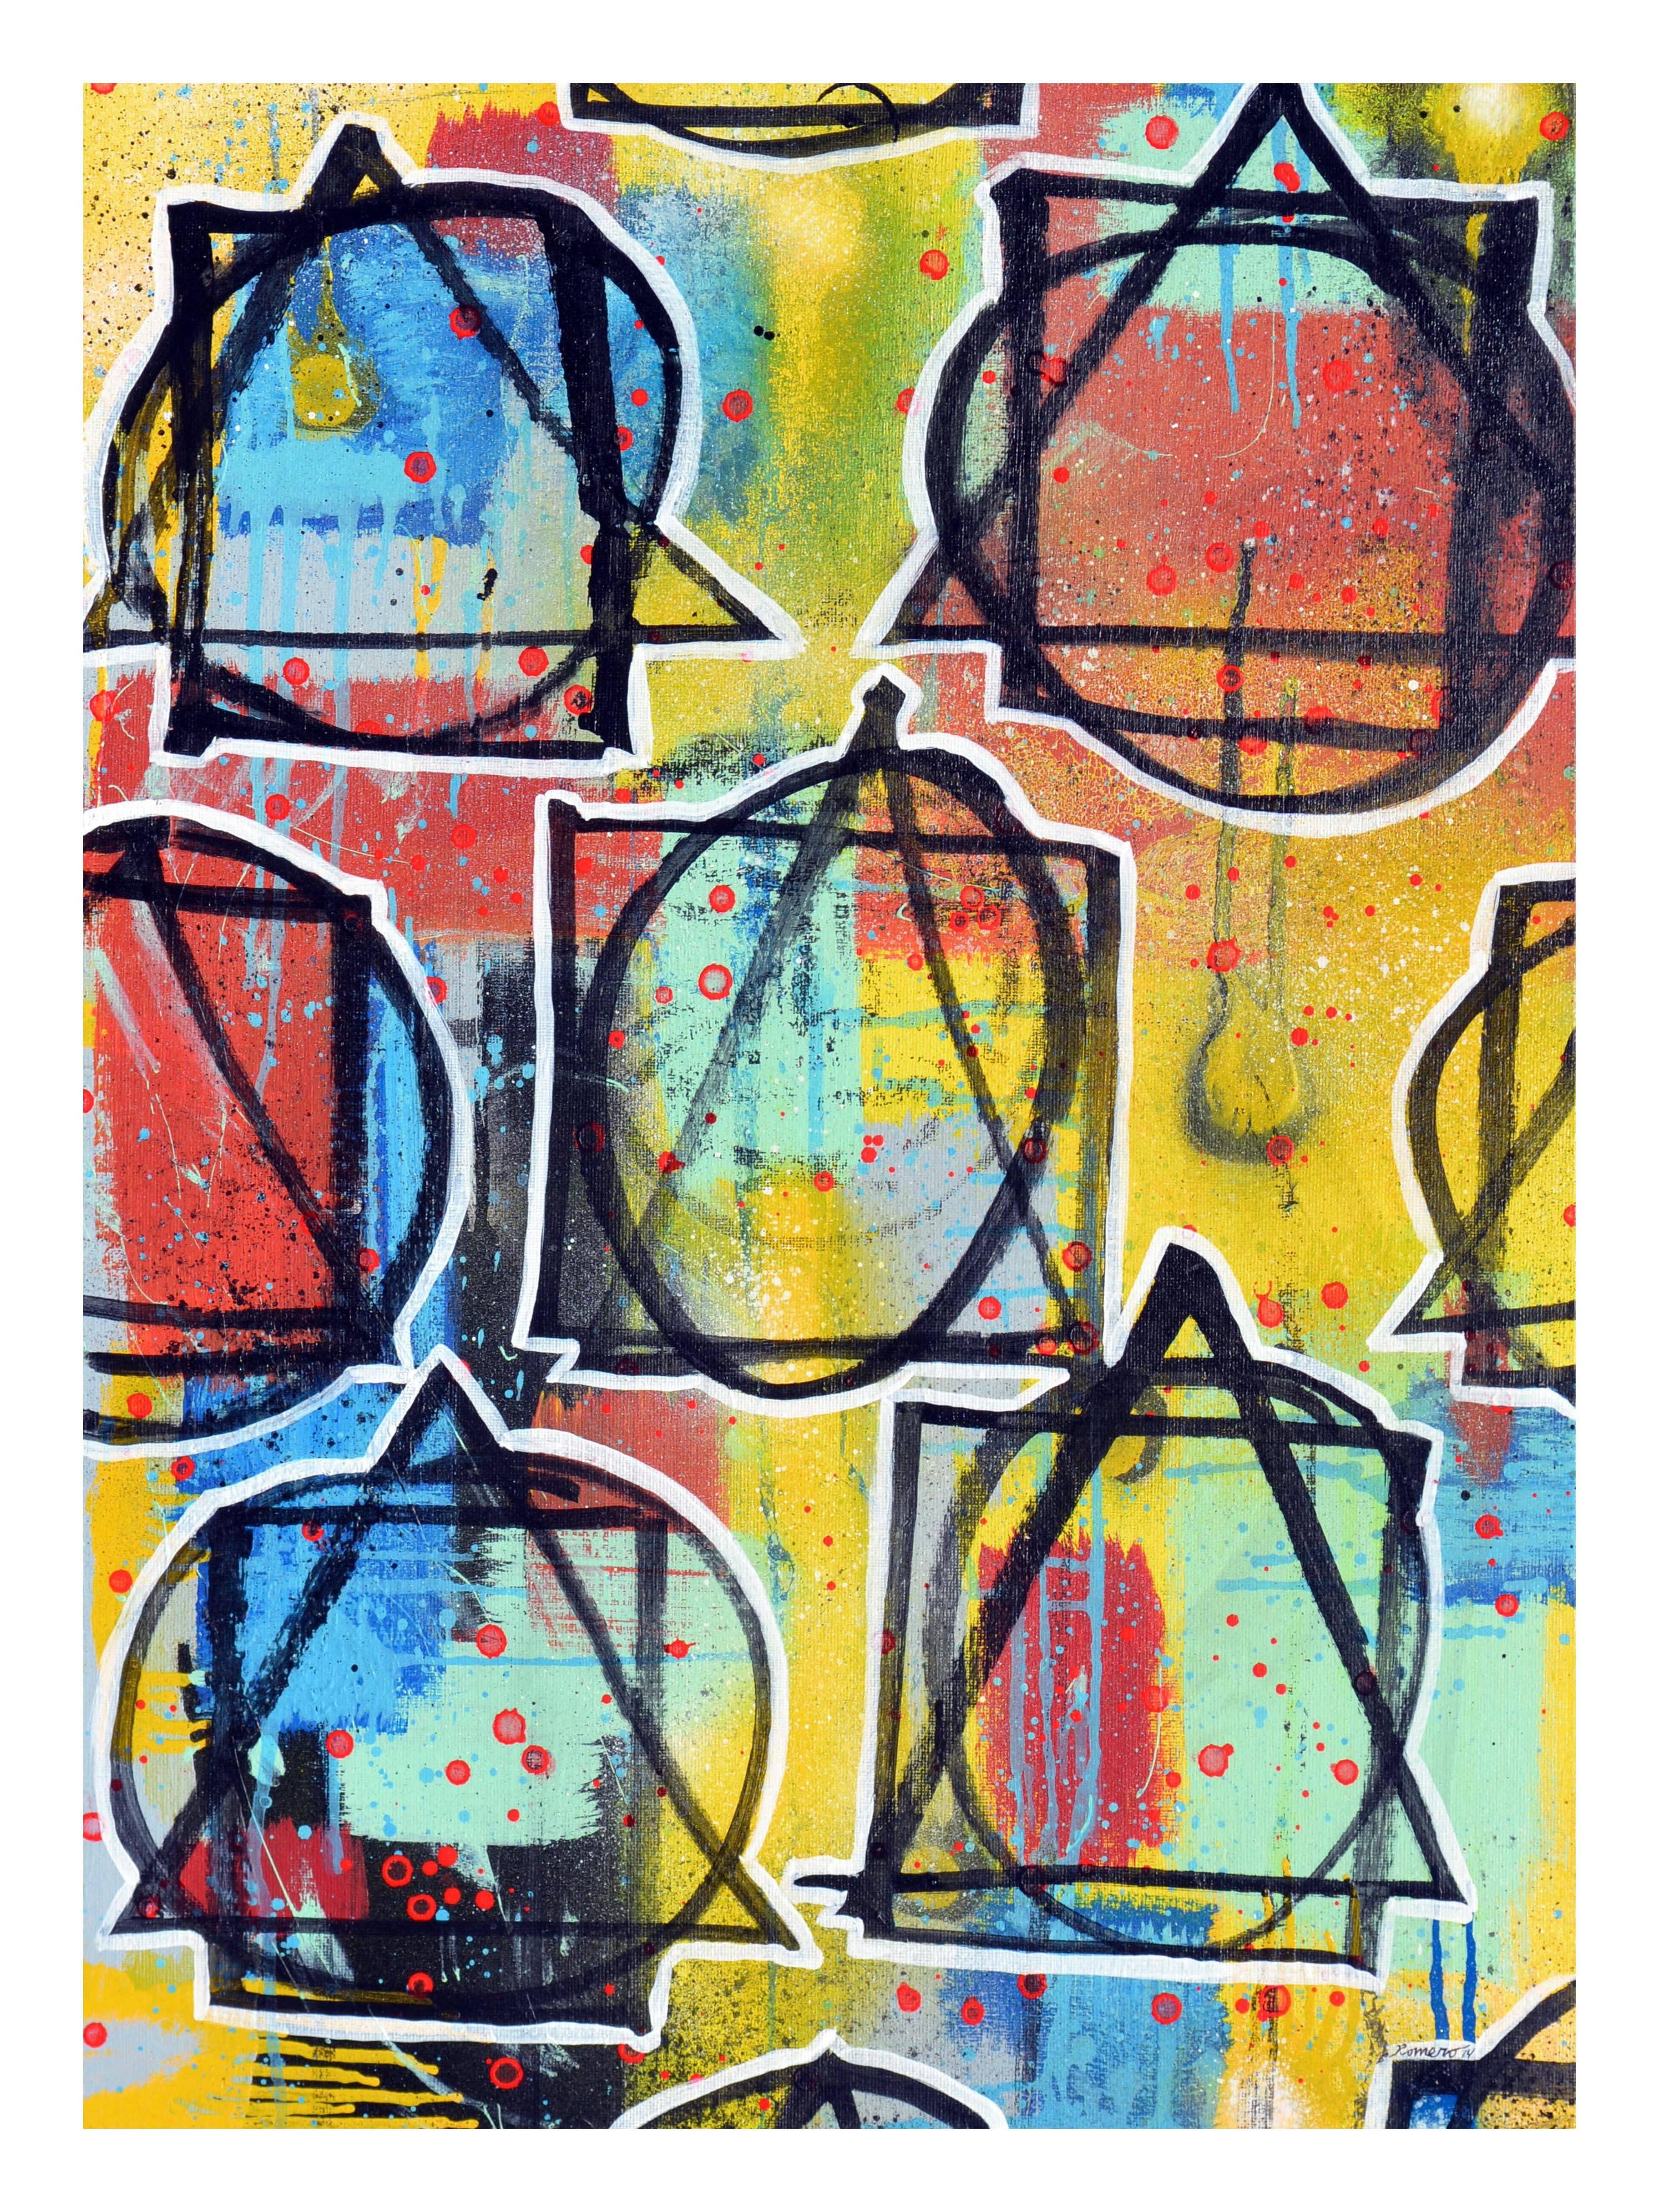 Abstrakt-expressionistischer Künstler „Future Code“ wurde 1985 in Aromas, Kalifornien, geboren